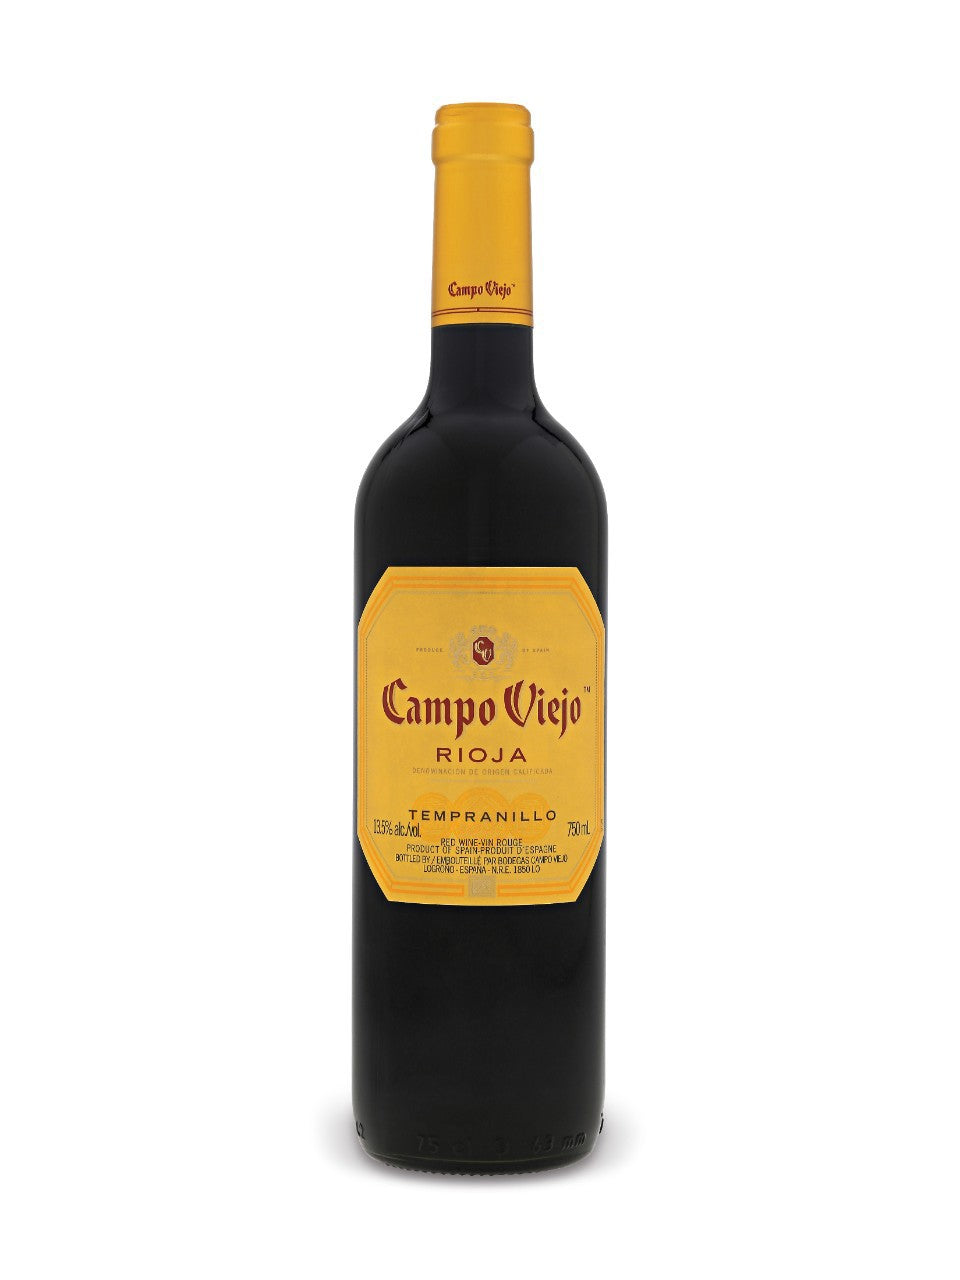 Campo Viejo Rioja Tempranillo 750 ml bottle